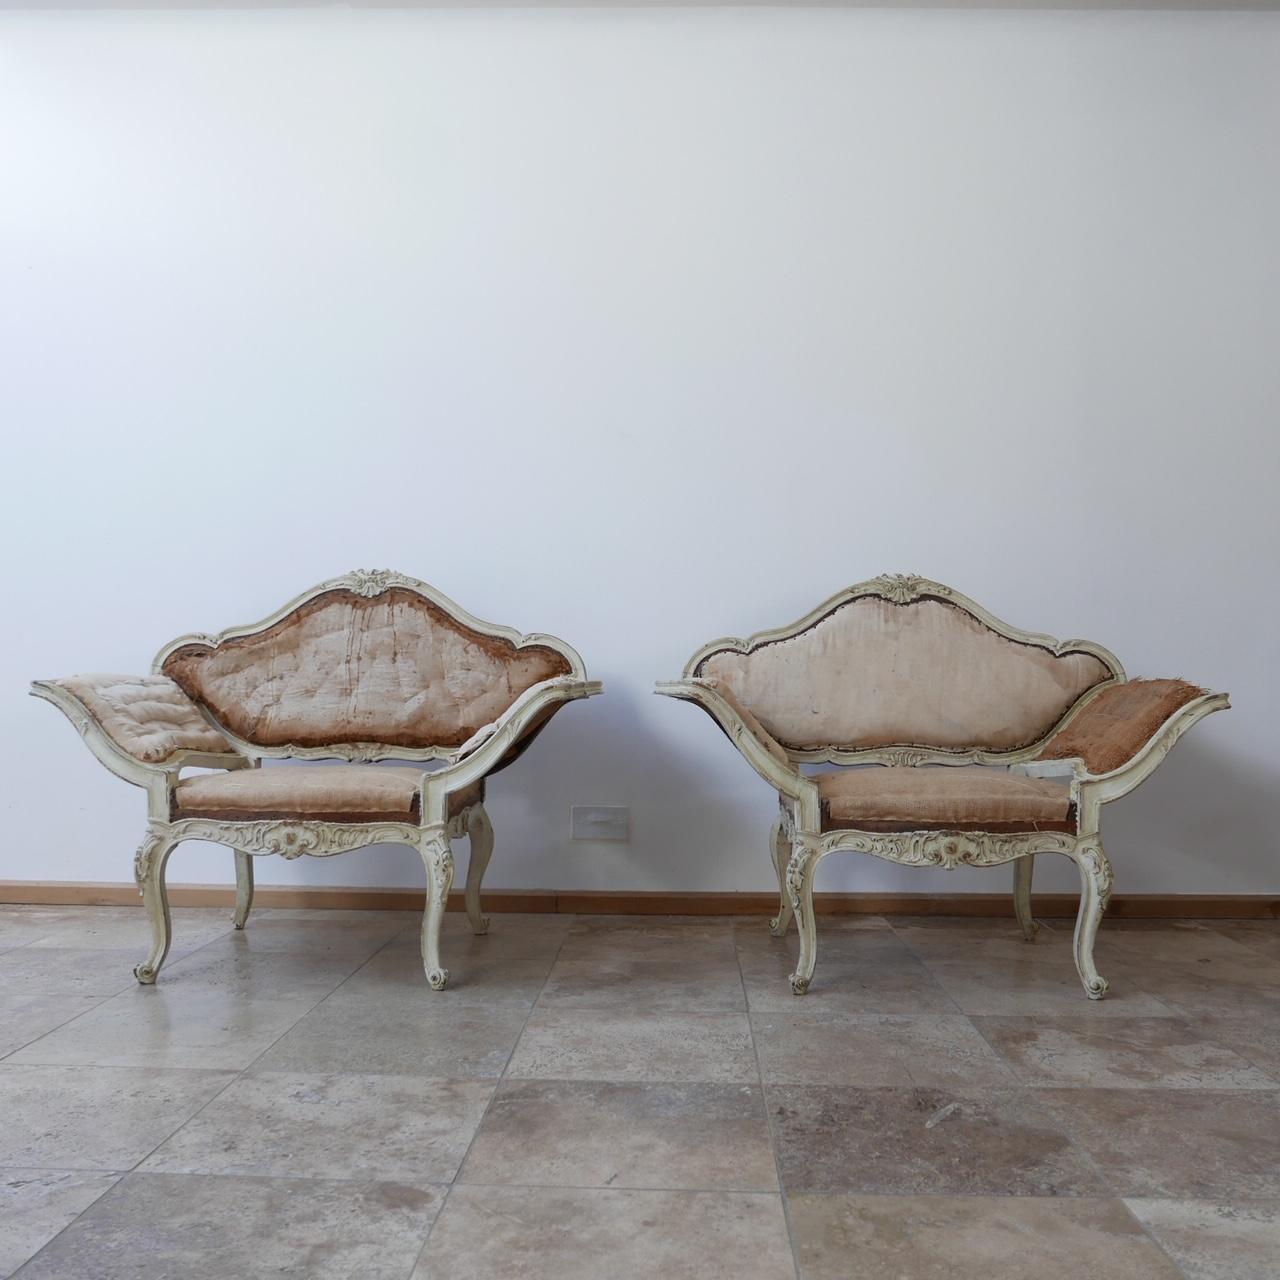 Une paire de fauteuils français datant d'environ 1840.

Dépouillé, prêt à être tapissé.

Les accoudoirs ouverts et évasés, d'une forme rare et inhabituelle, vous invitent à vous asseoir.

Une élégance totale.

Dimensions : 120 L x 60 P x 40